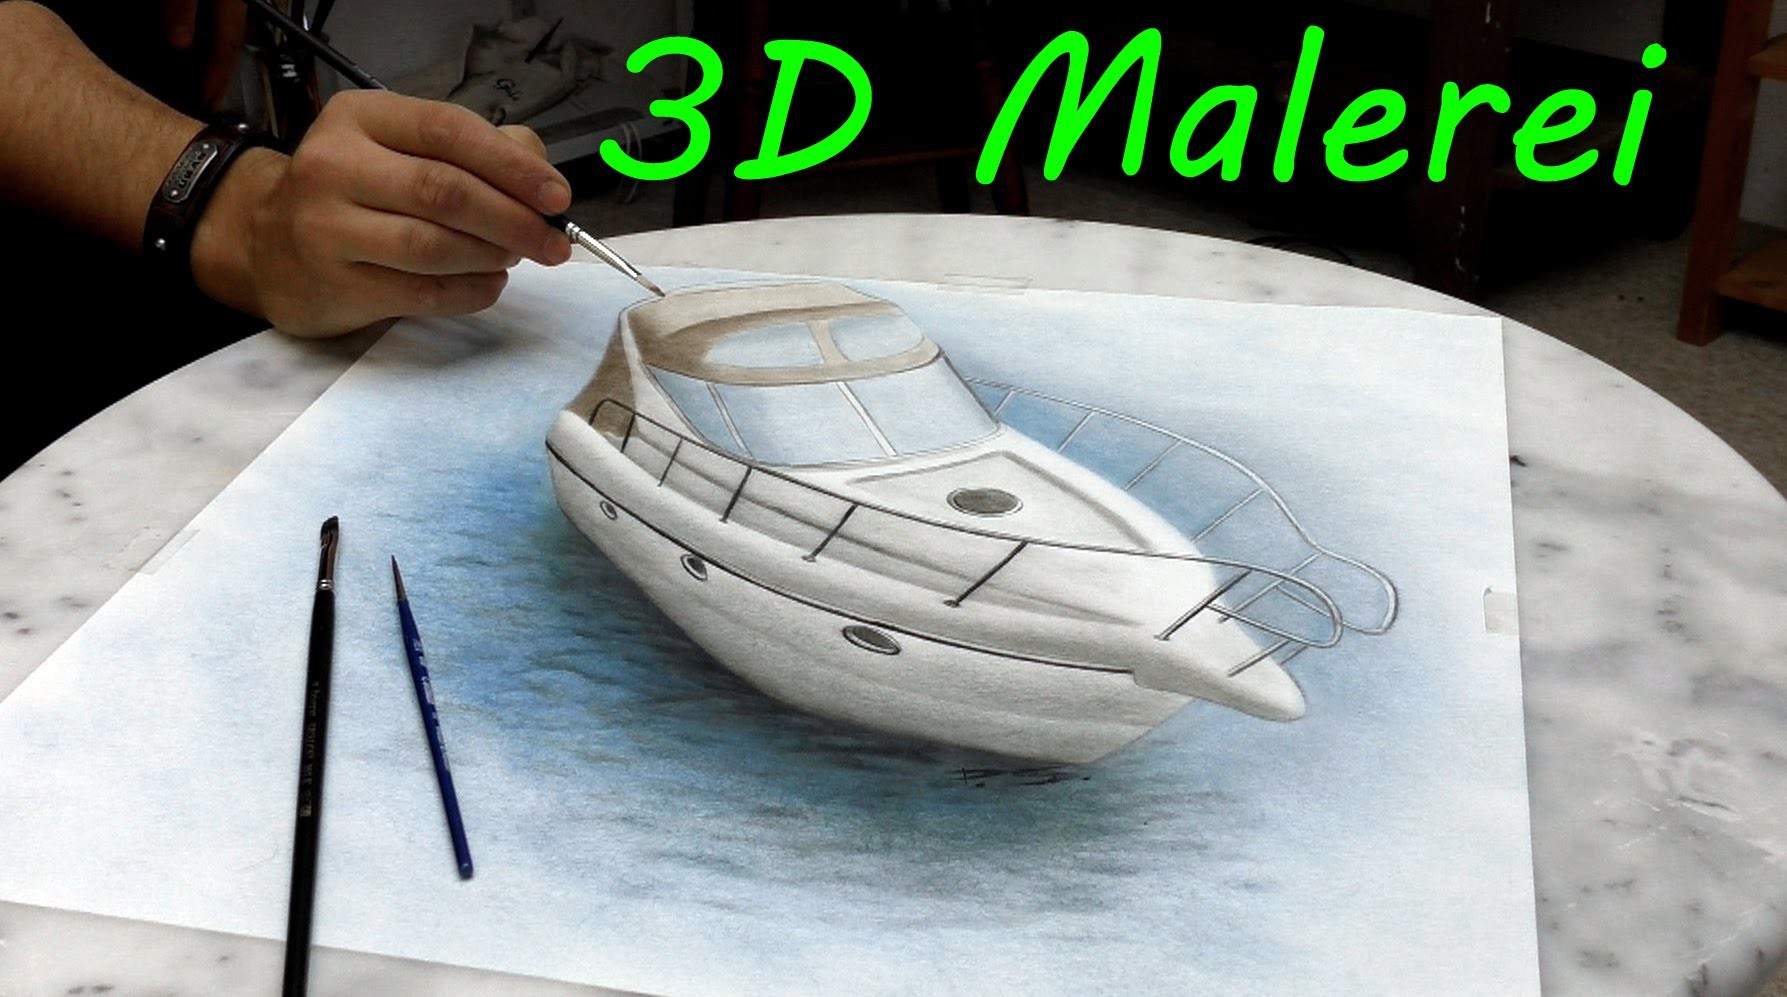 Yacht gemalt in 3D.realistische Malerei